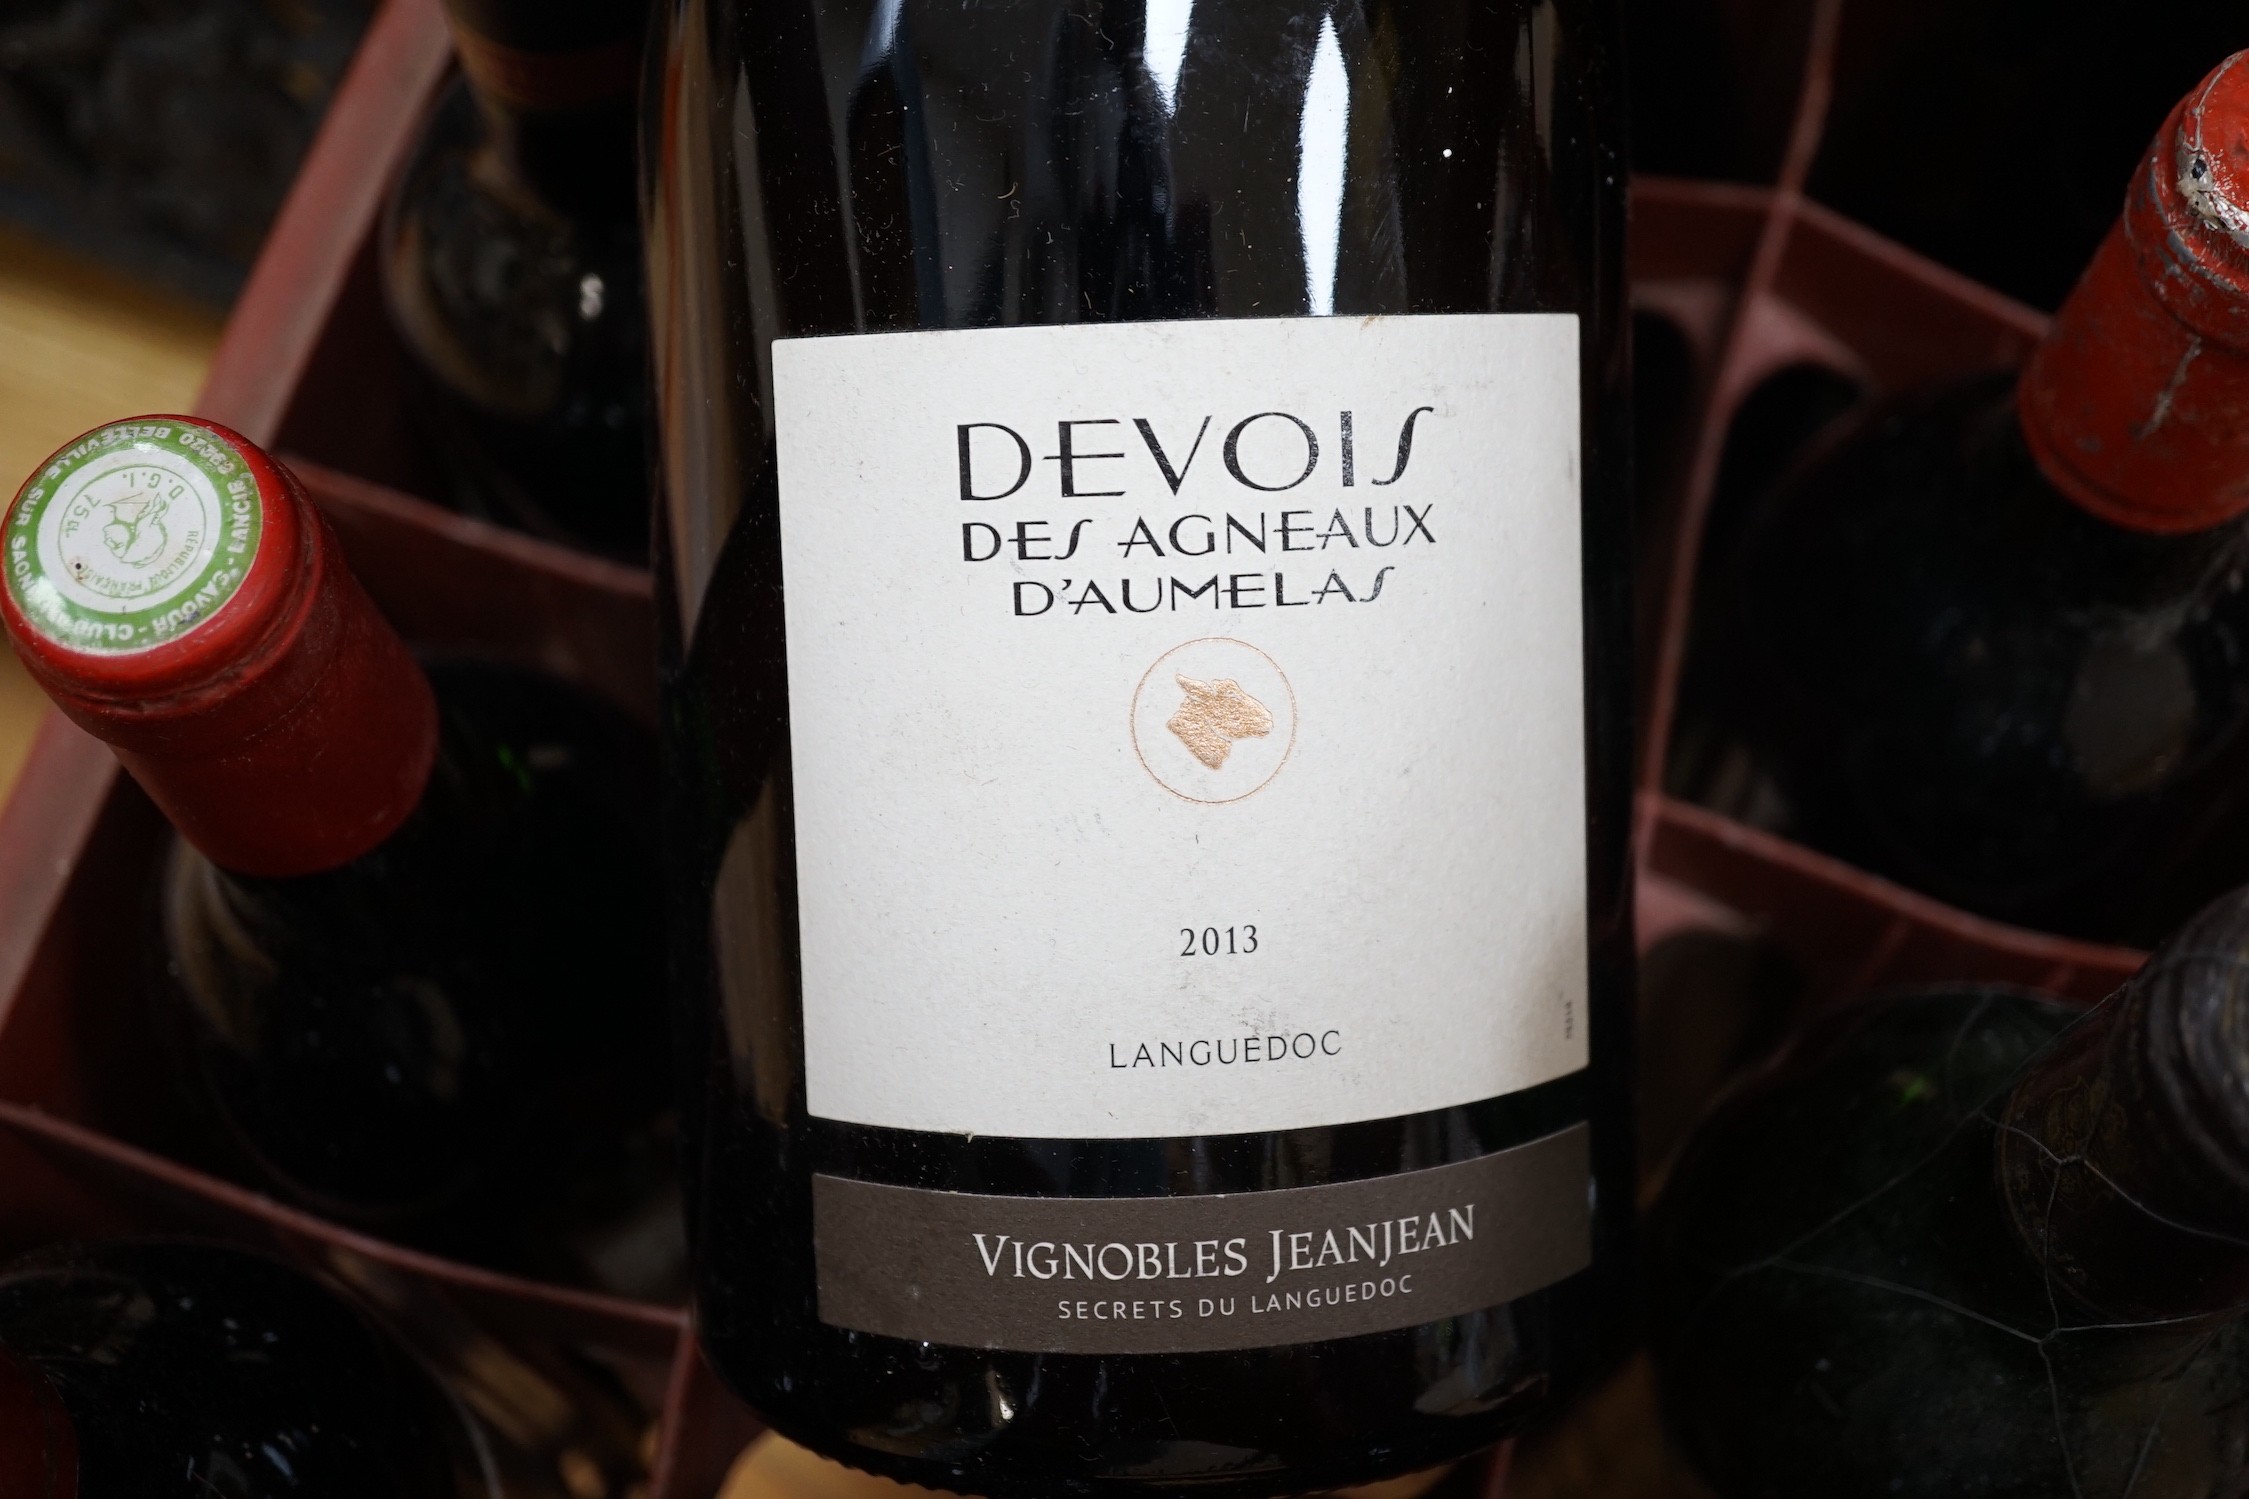 11 bottles of Wine including Devois des Agneaux, D'Aumelas magnum, 2013